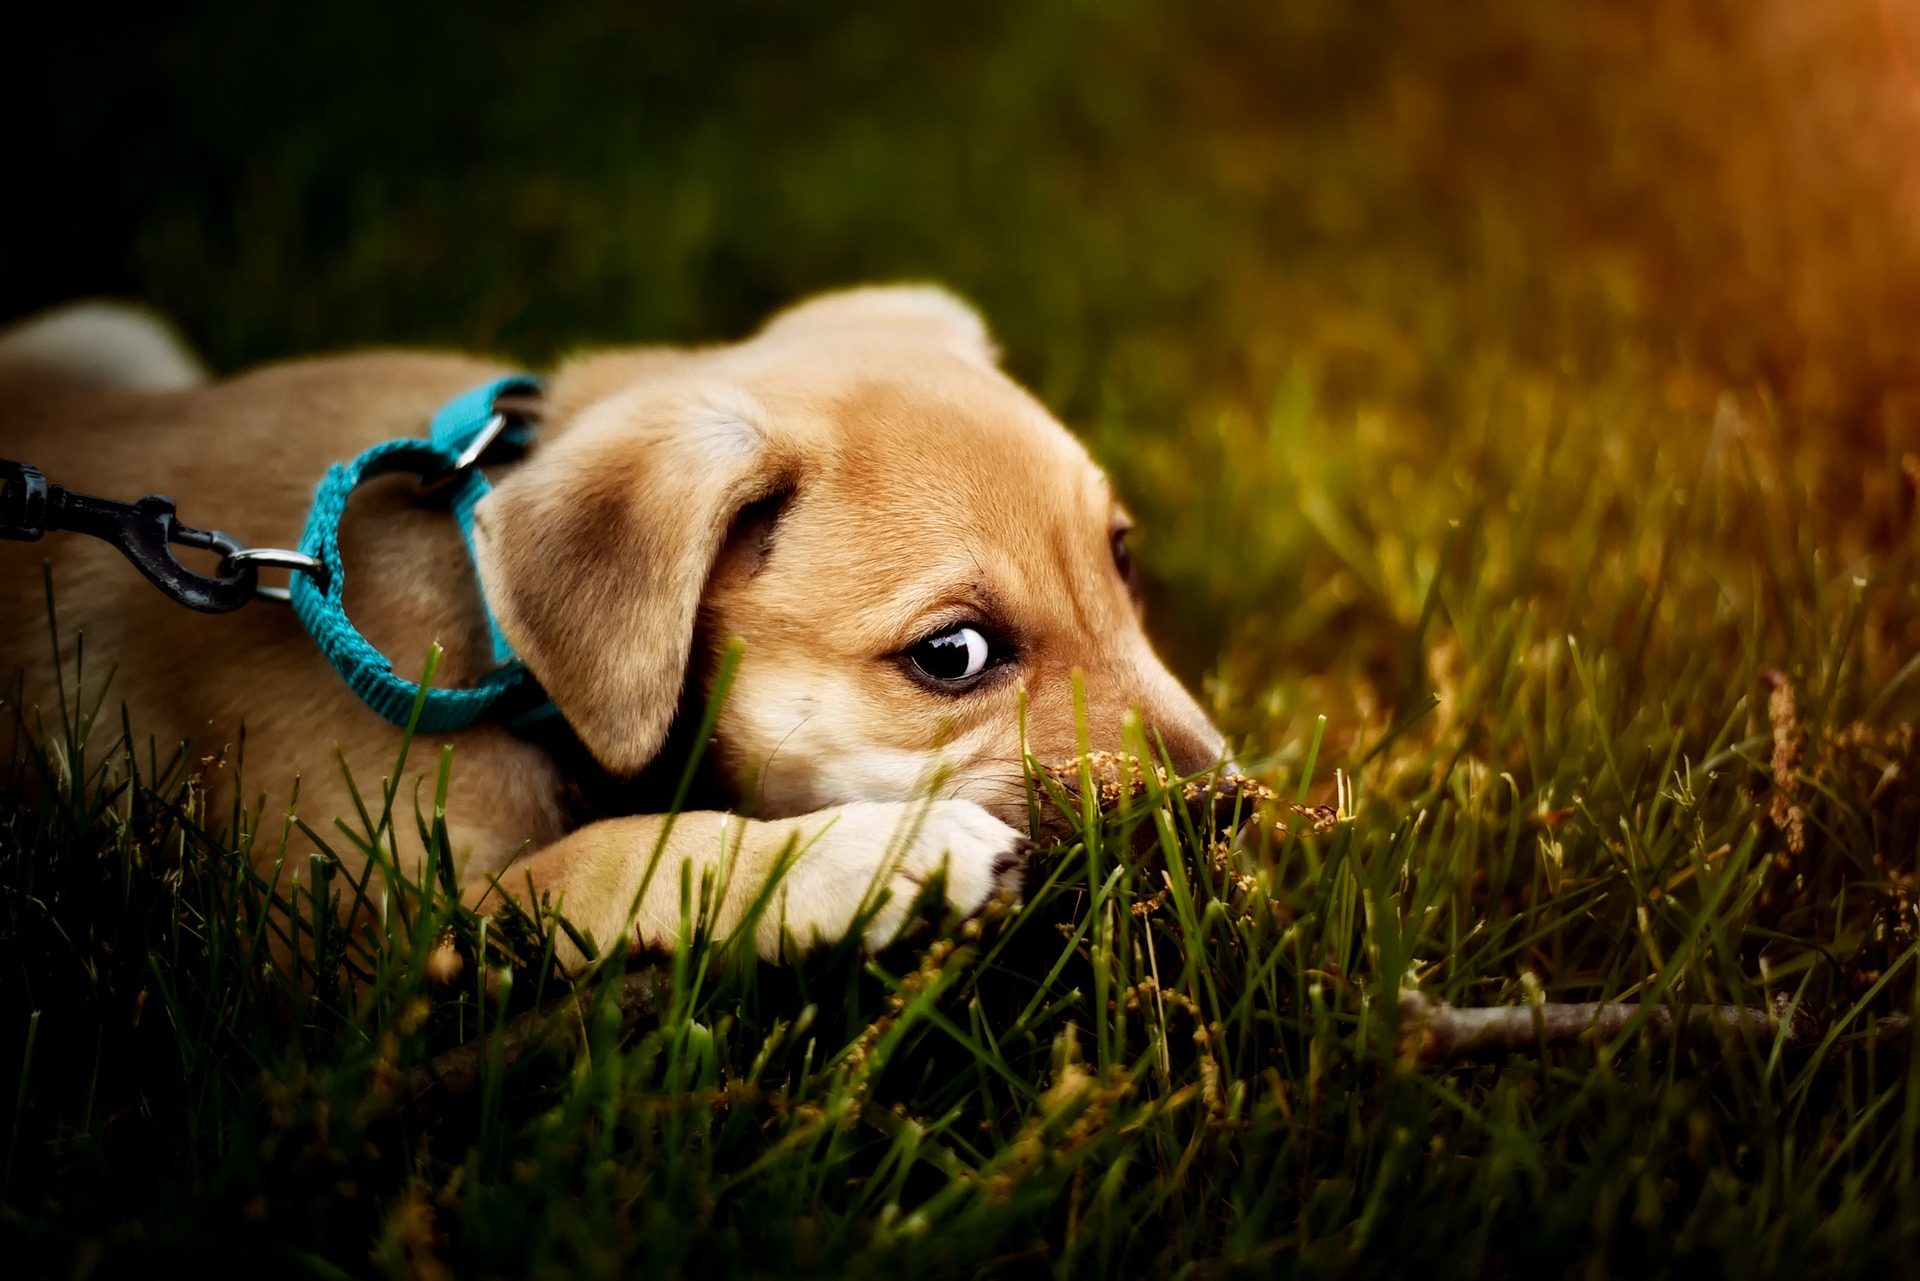 Les vomissements chez un chien doivent toujours être le signe d'une surveillance accrue de son comportement et de son état de santé. Dans le cas des chiots et des chiens âgés, une visite immédiate chez le vétérinaire s'impose.